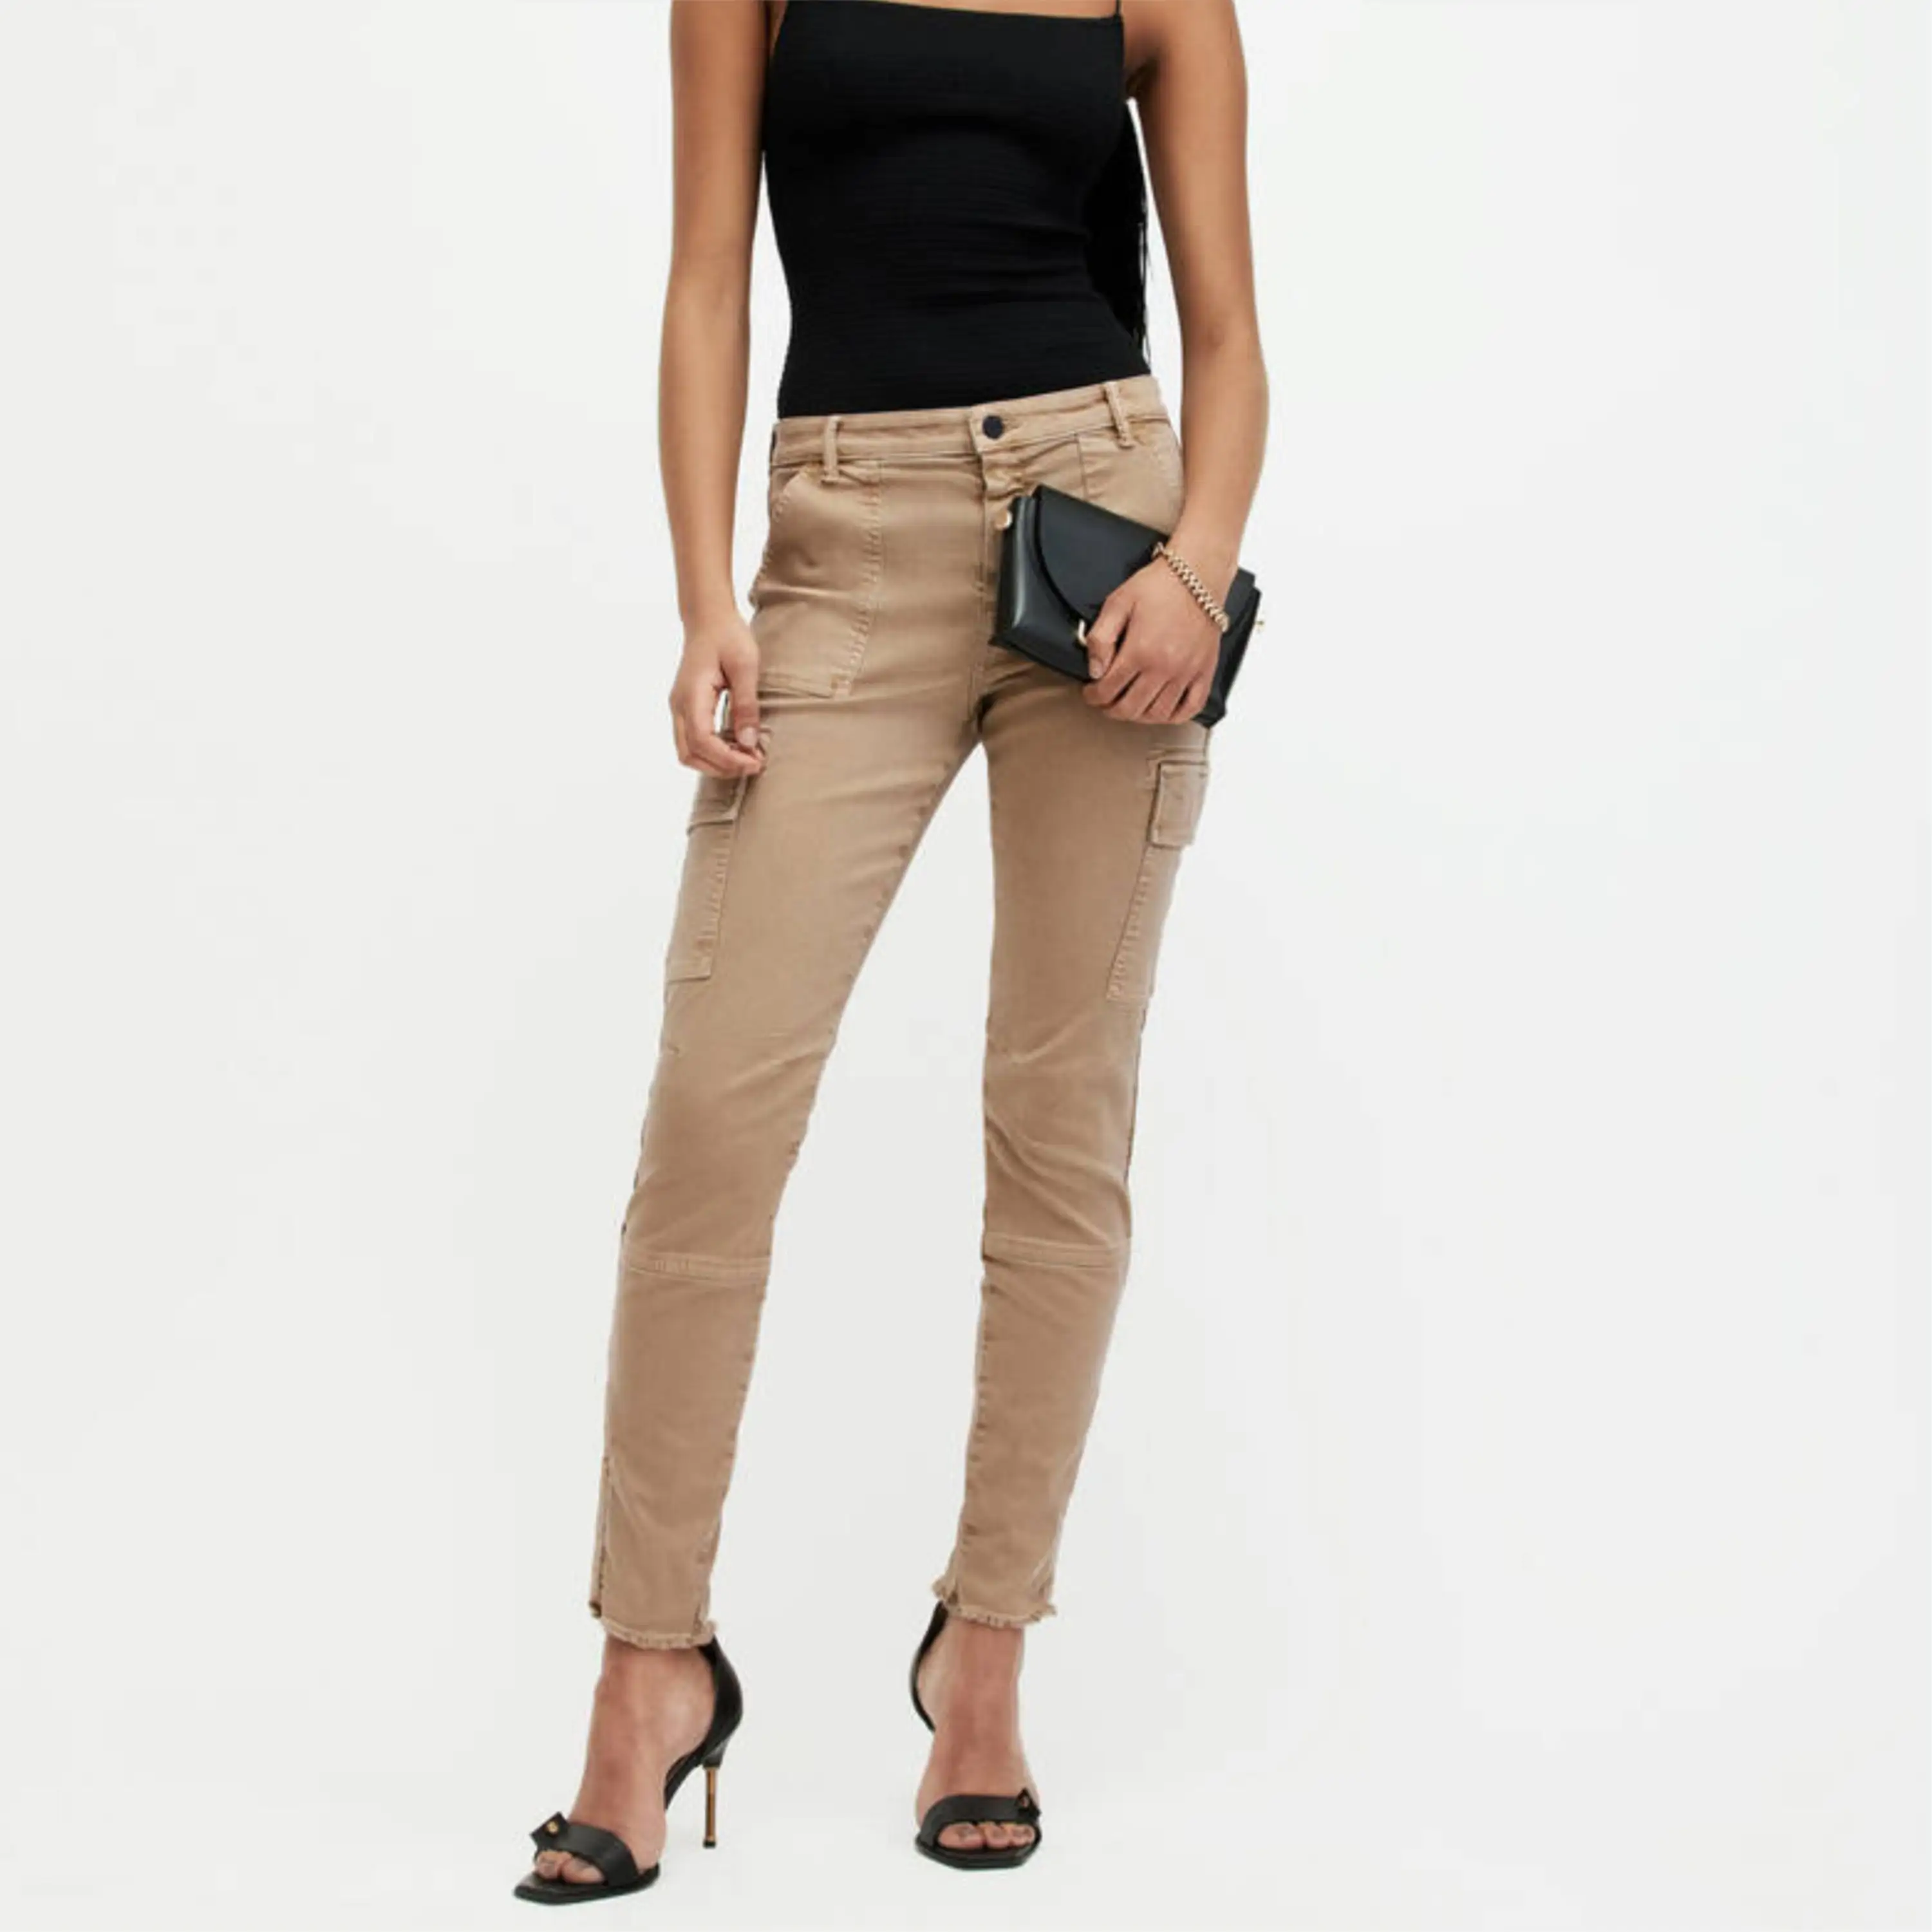 سراويل جينز نسائية ذات جودة ممتازة ذات ساق واسعة من قماش الدنيم ذات تصميم أنيق وسحاب من قماش الدنيم ذو الطي سراويل نسائية تصدير بسعر رخيص